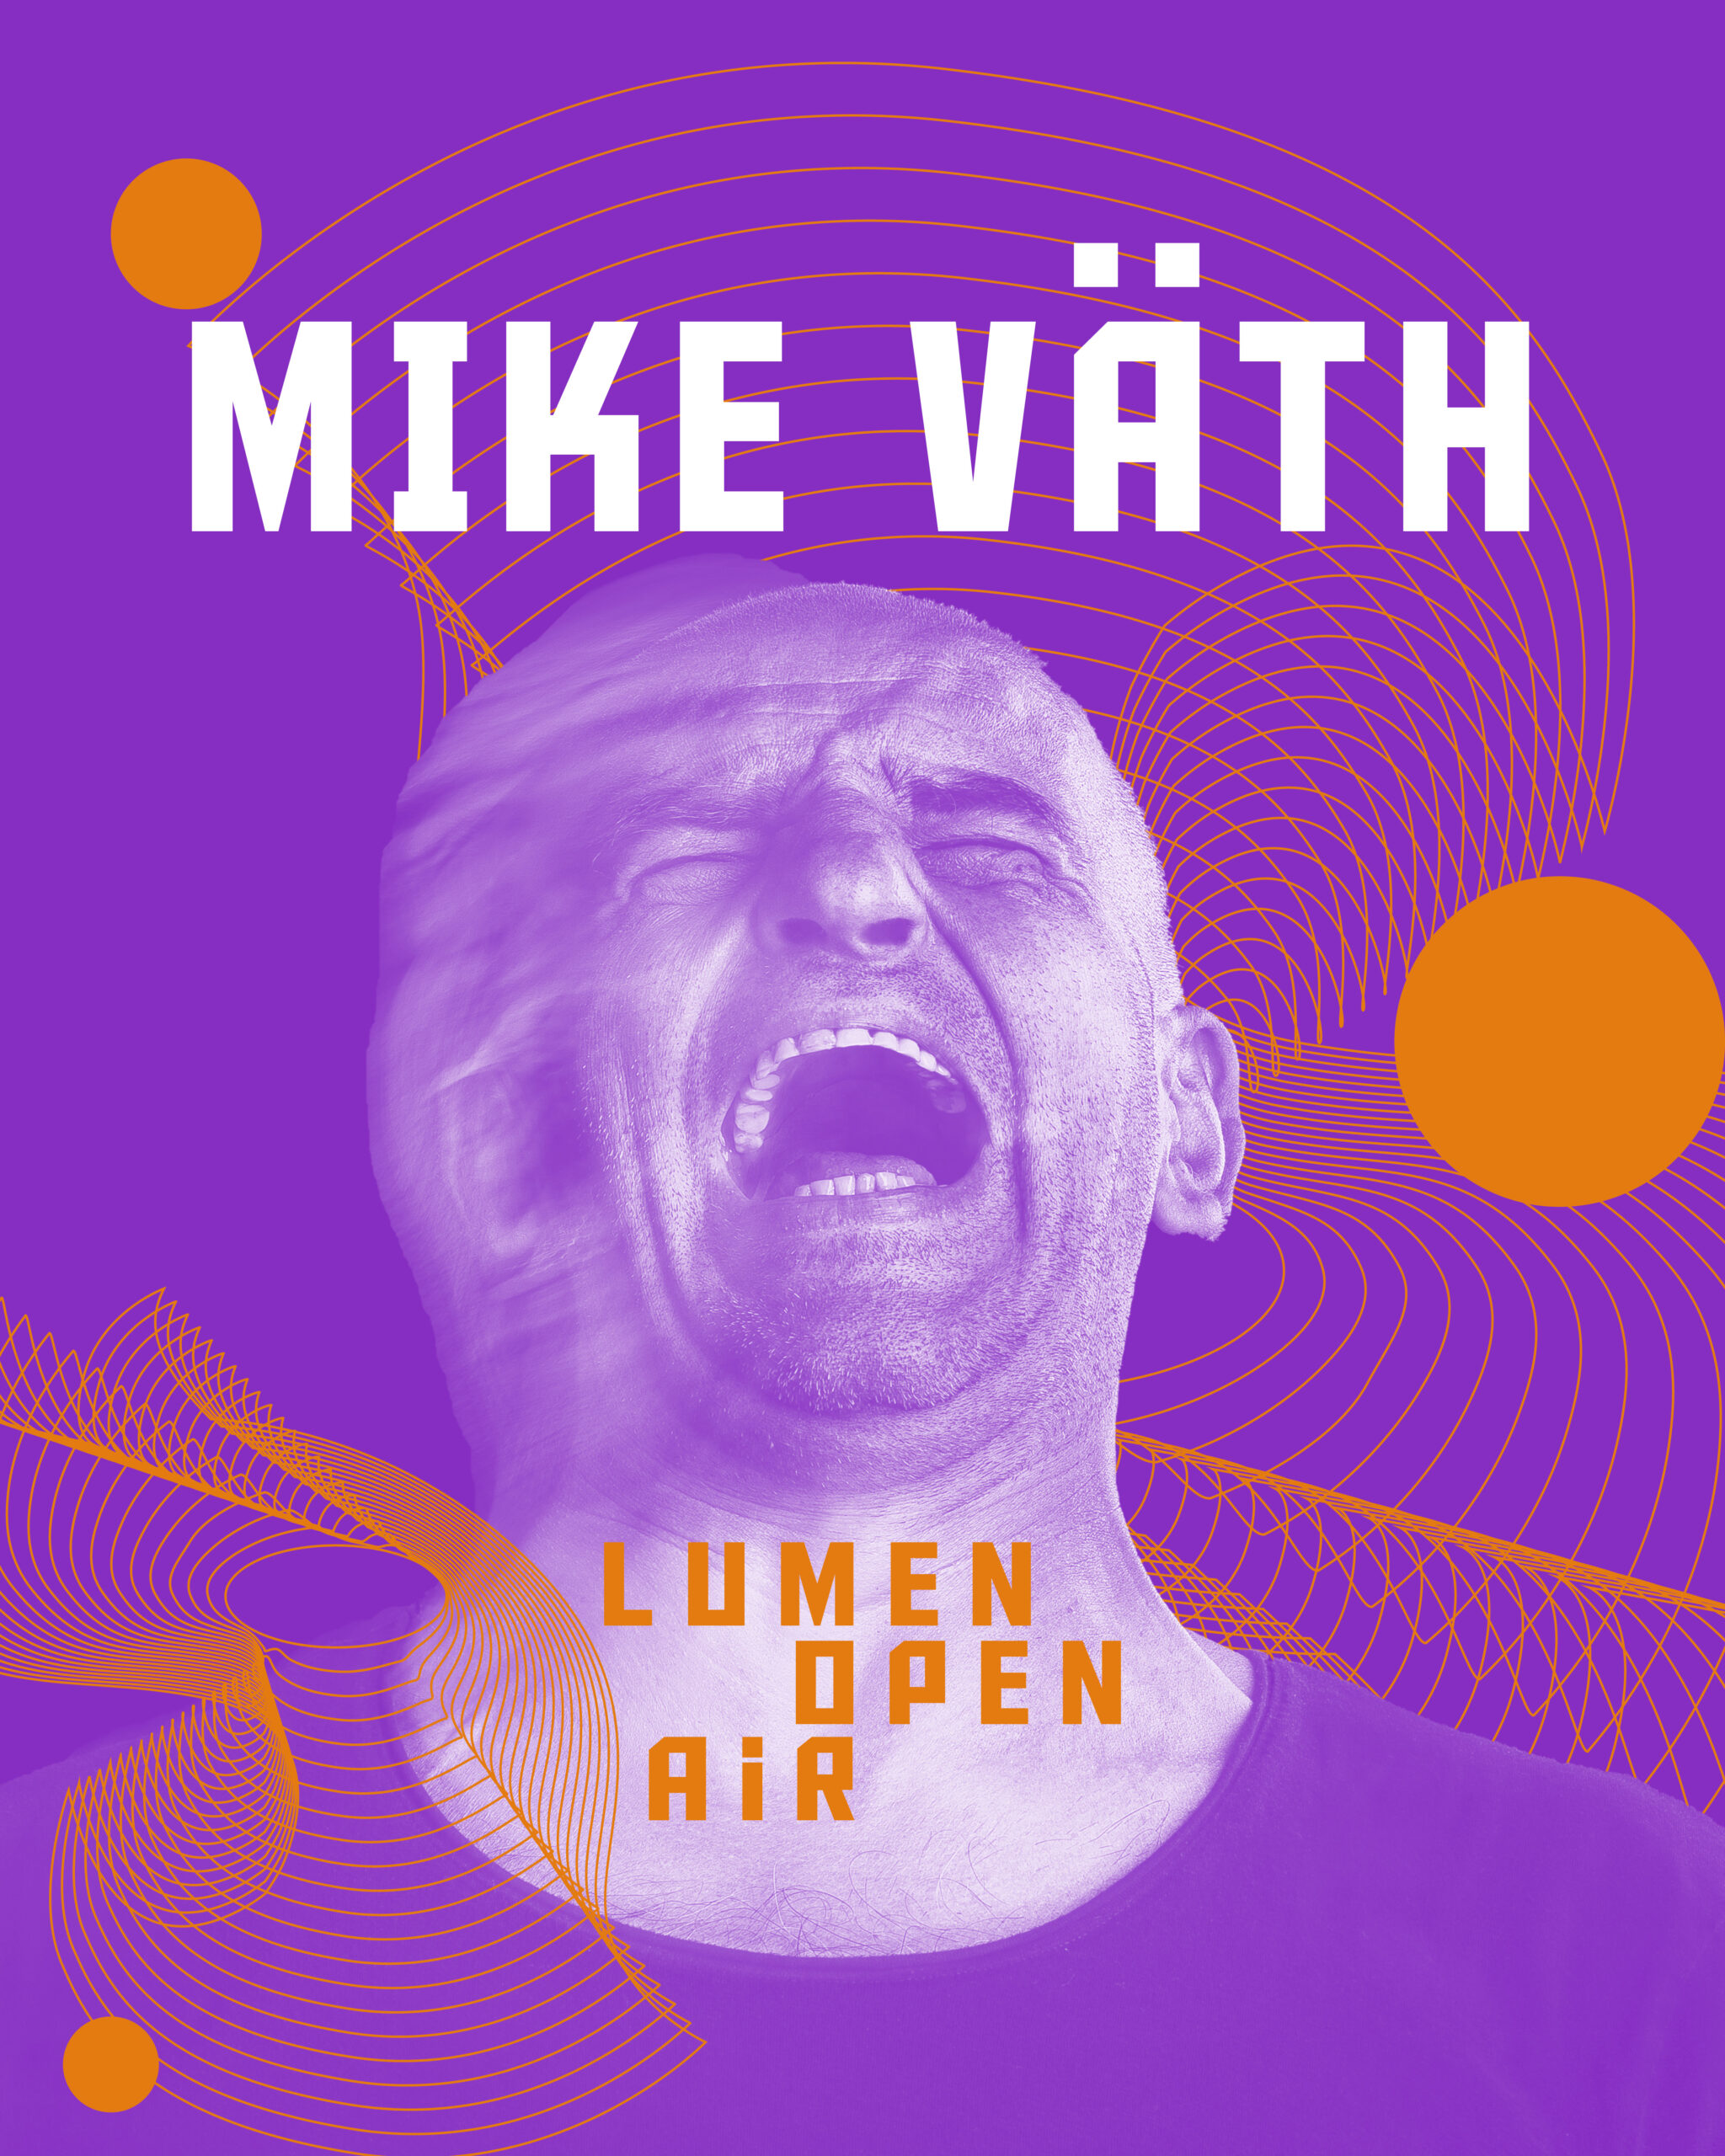 DJ Mike Väth